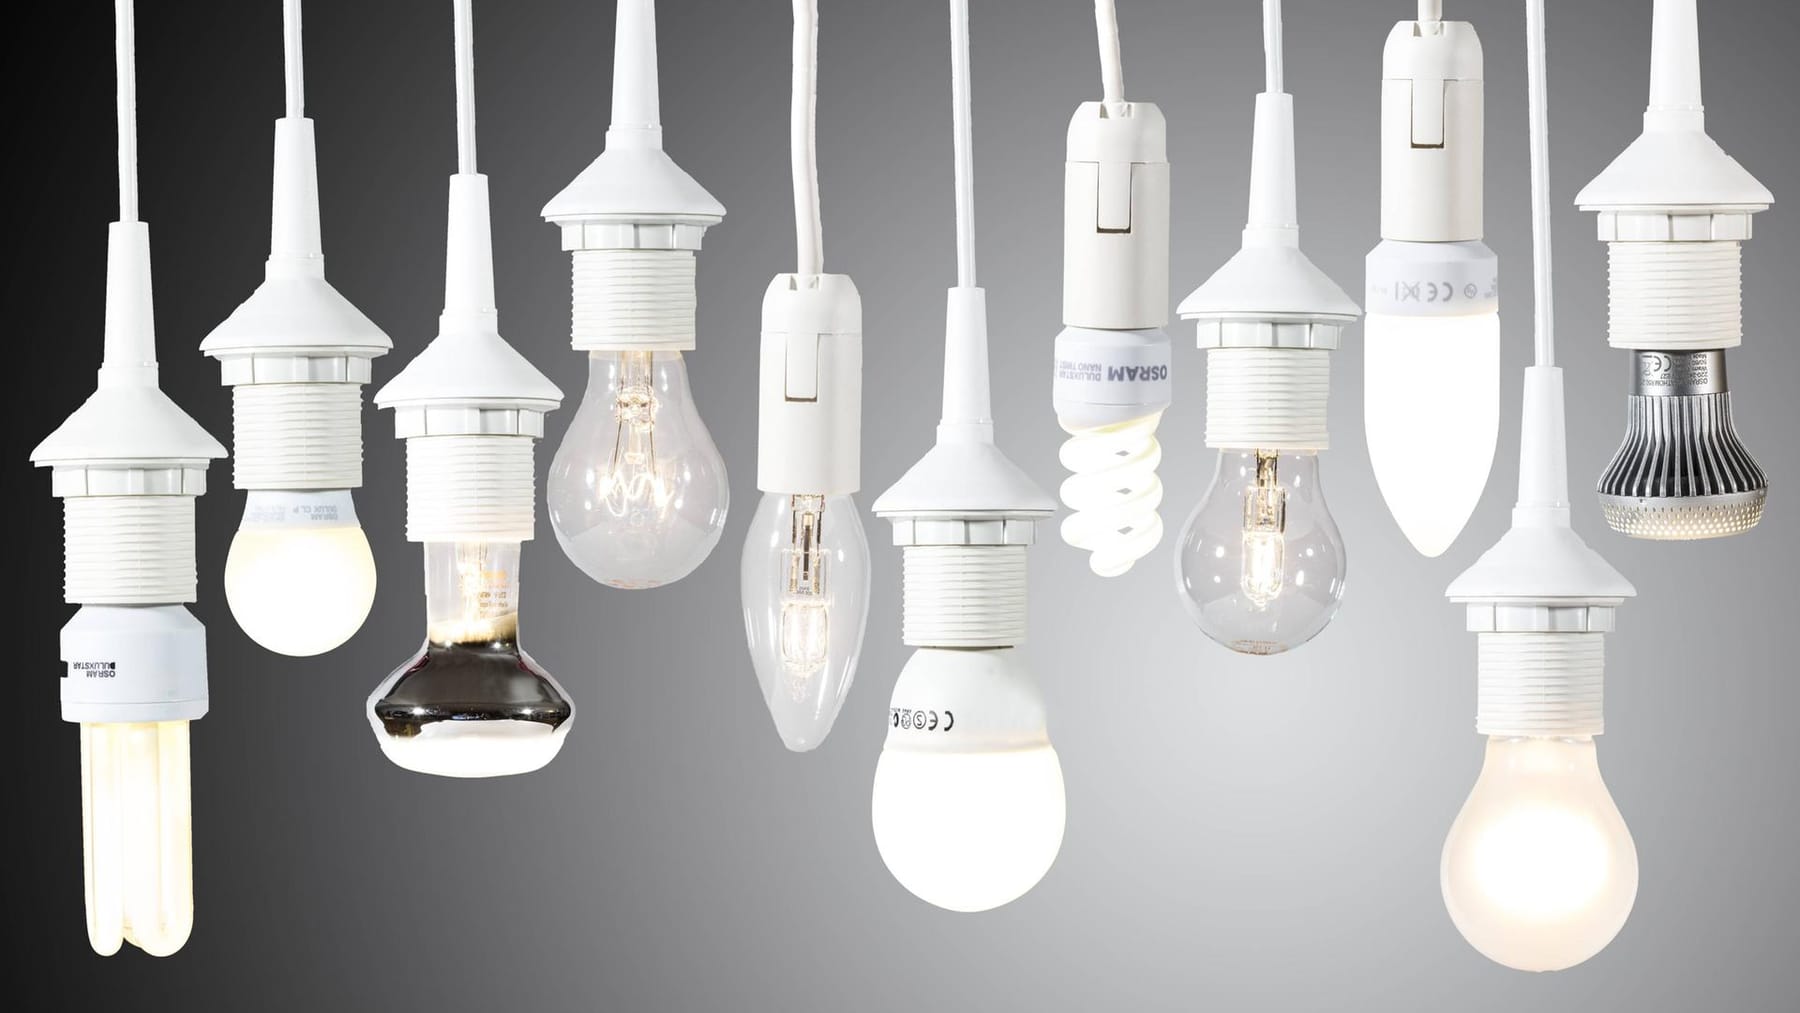 LED-Lampen: Worauf Sie beim Kauf achten sollten